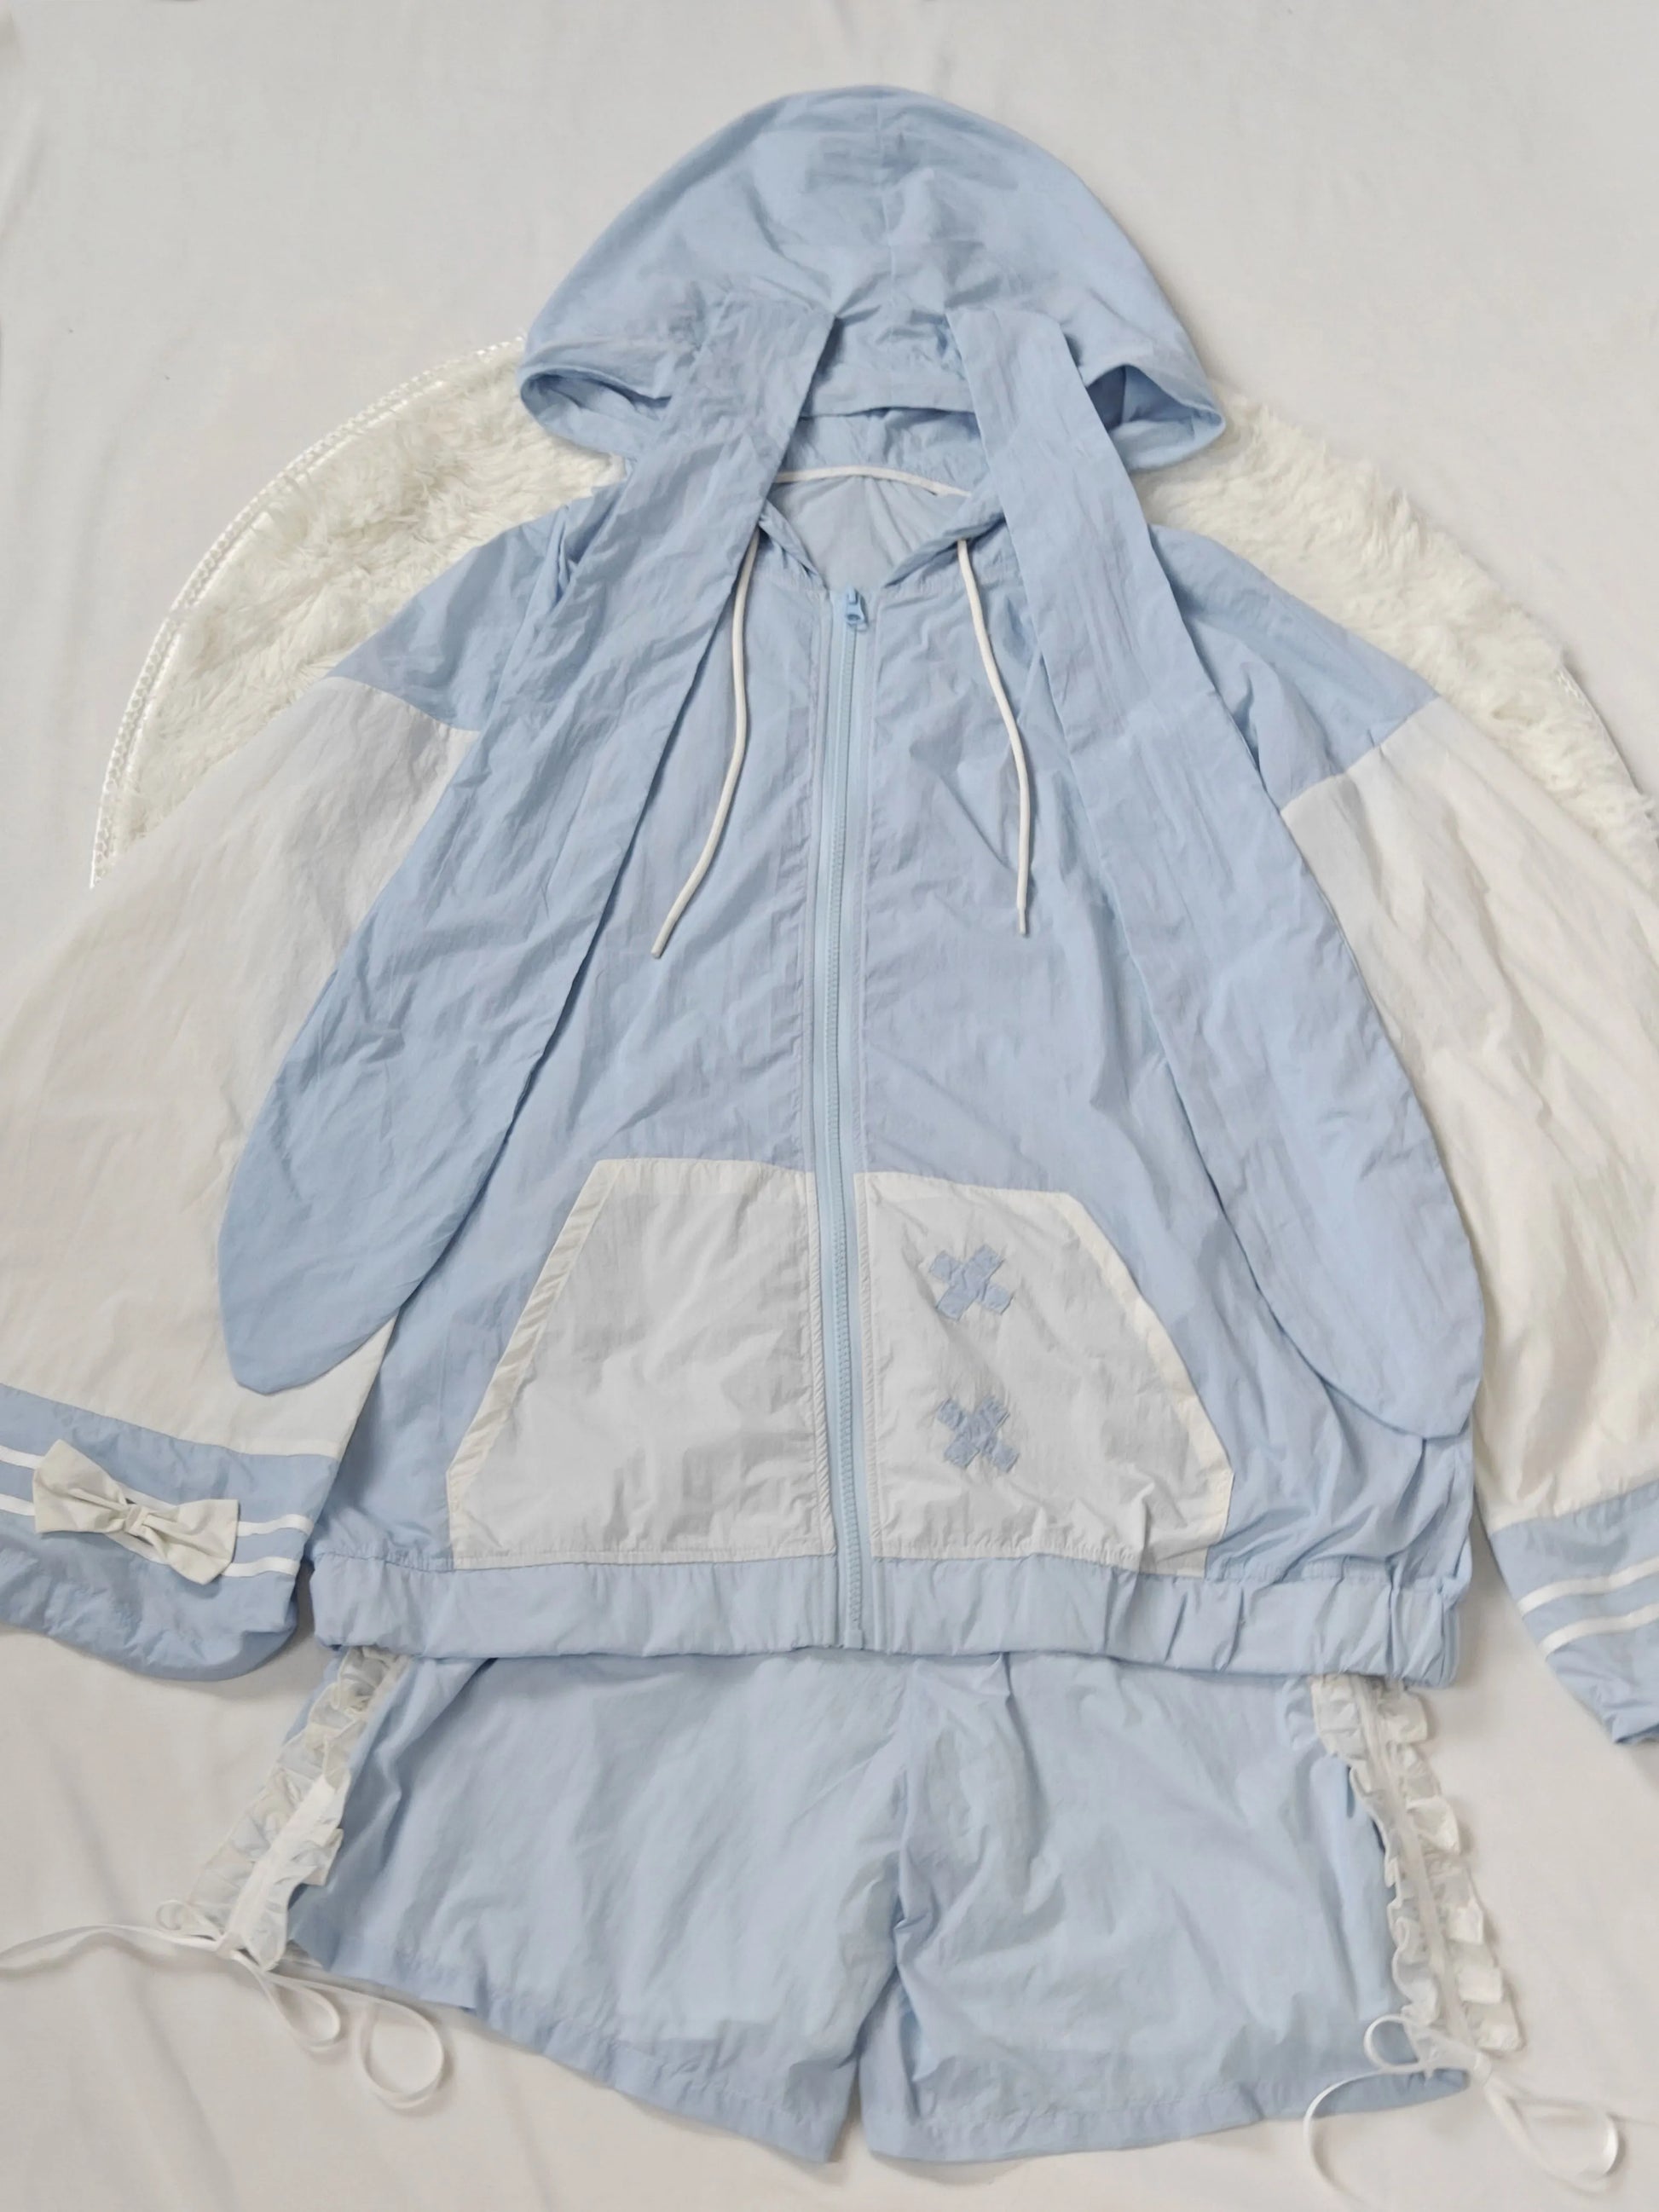 Tenshi Kaiwai Sun Protection Suit Angel Subculture Coat Set (L S) 37578:575930